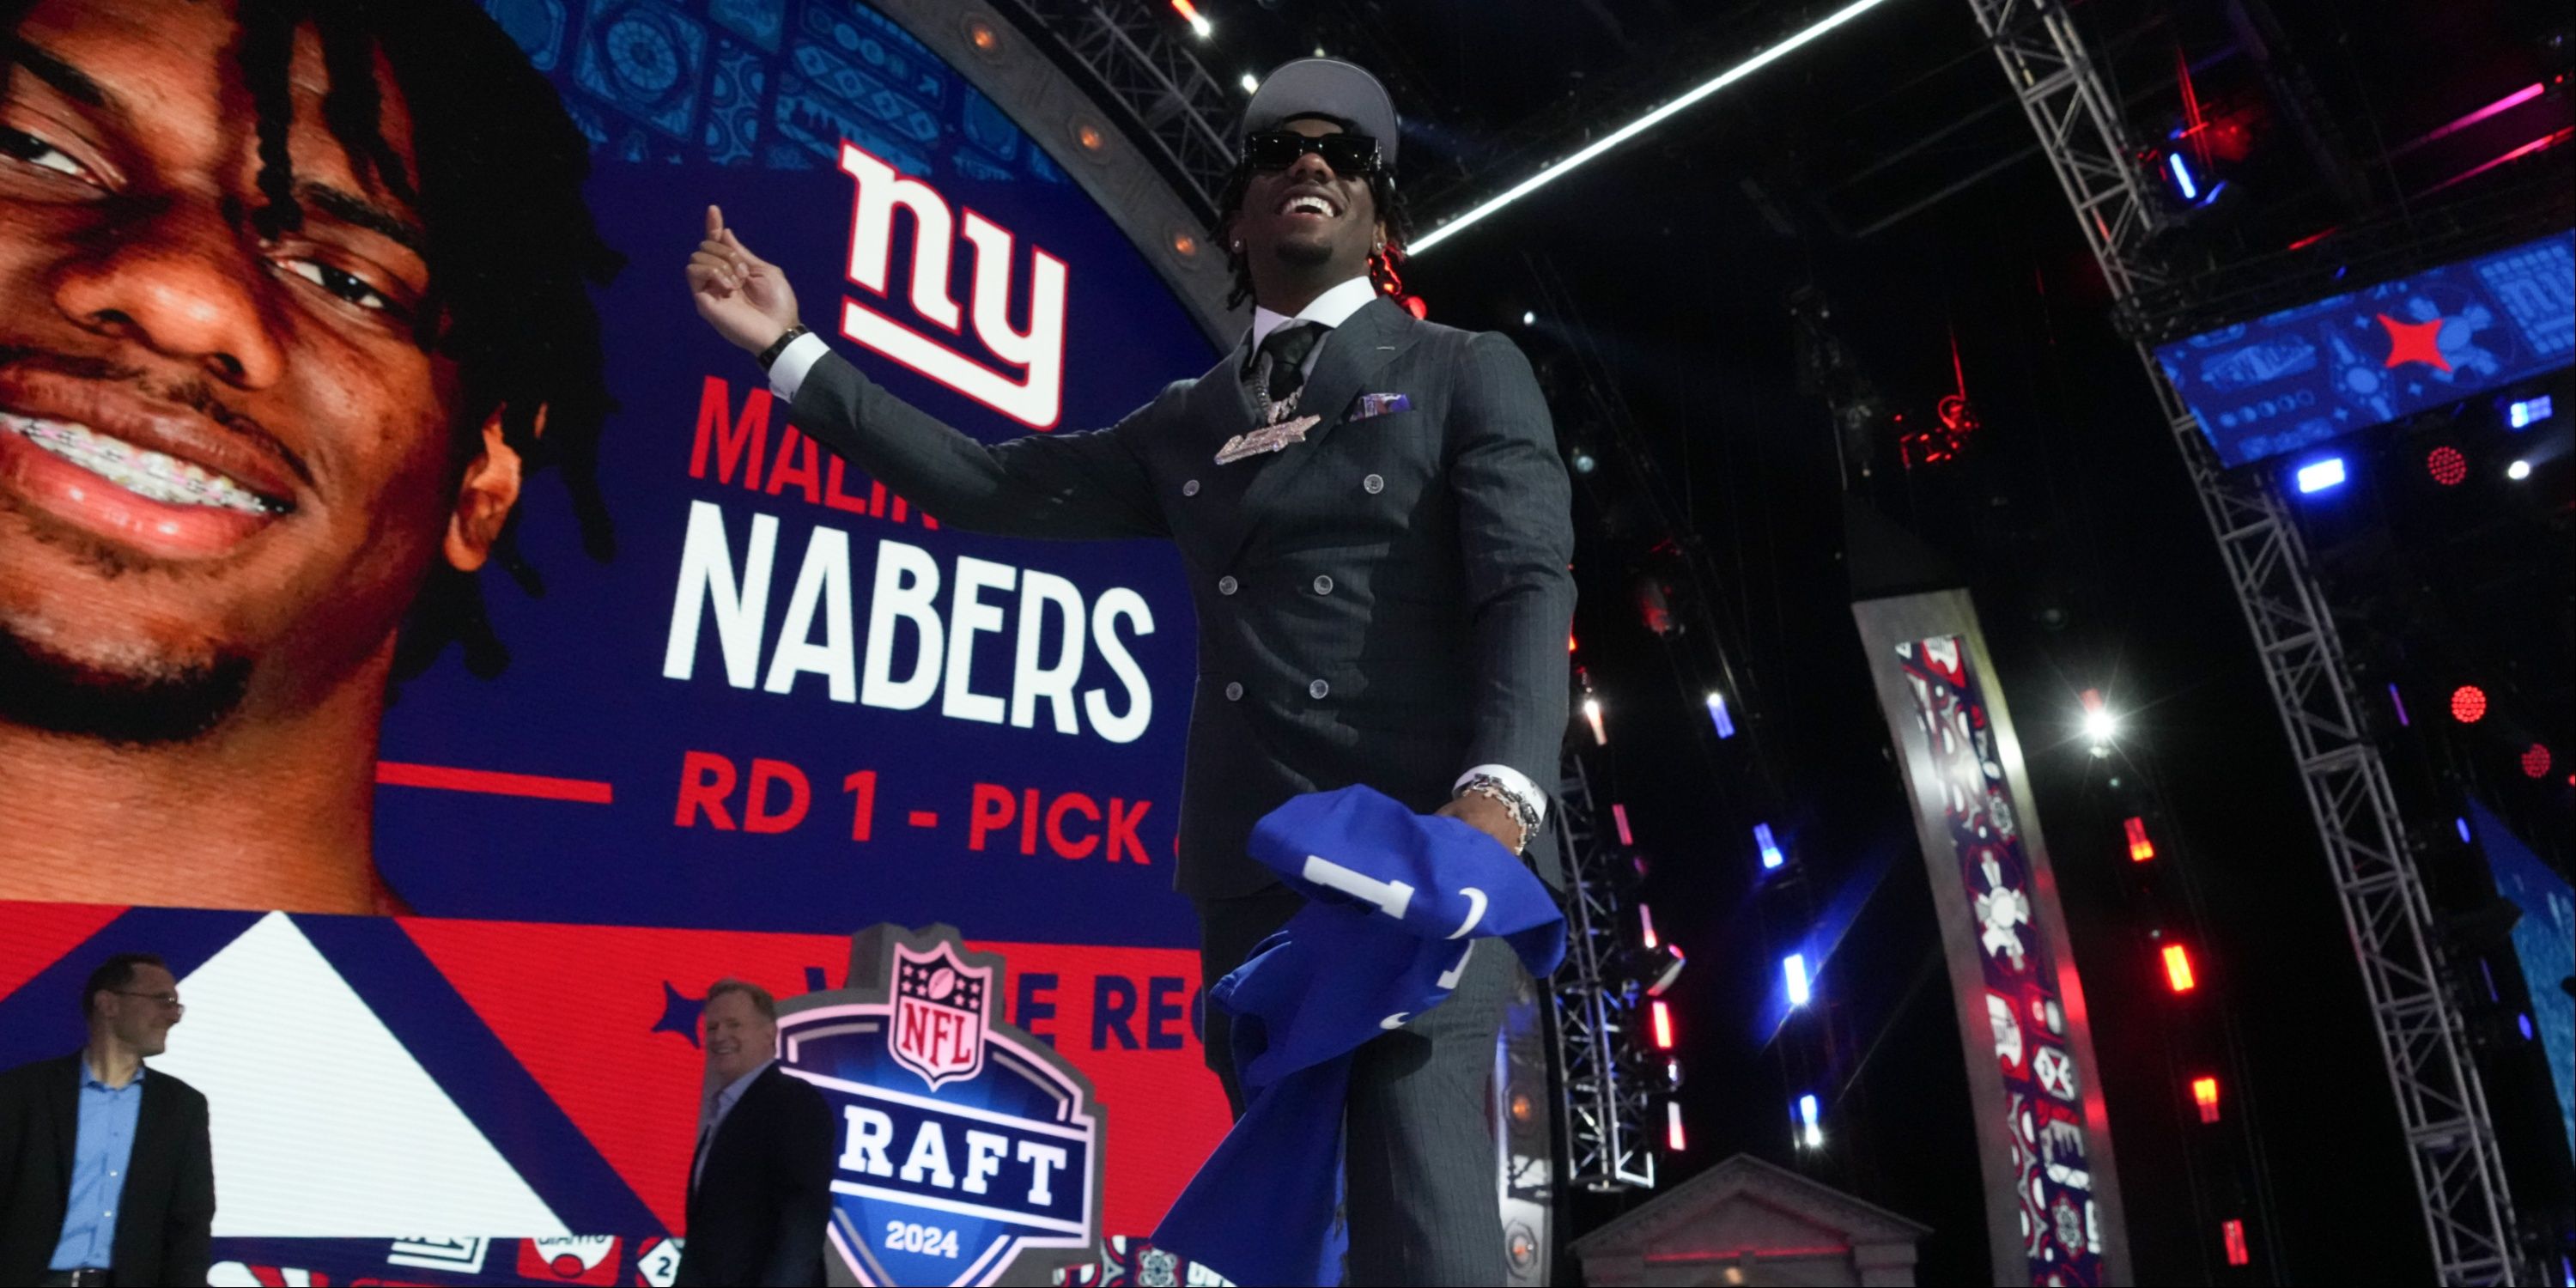 Giants' Malik Nabers